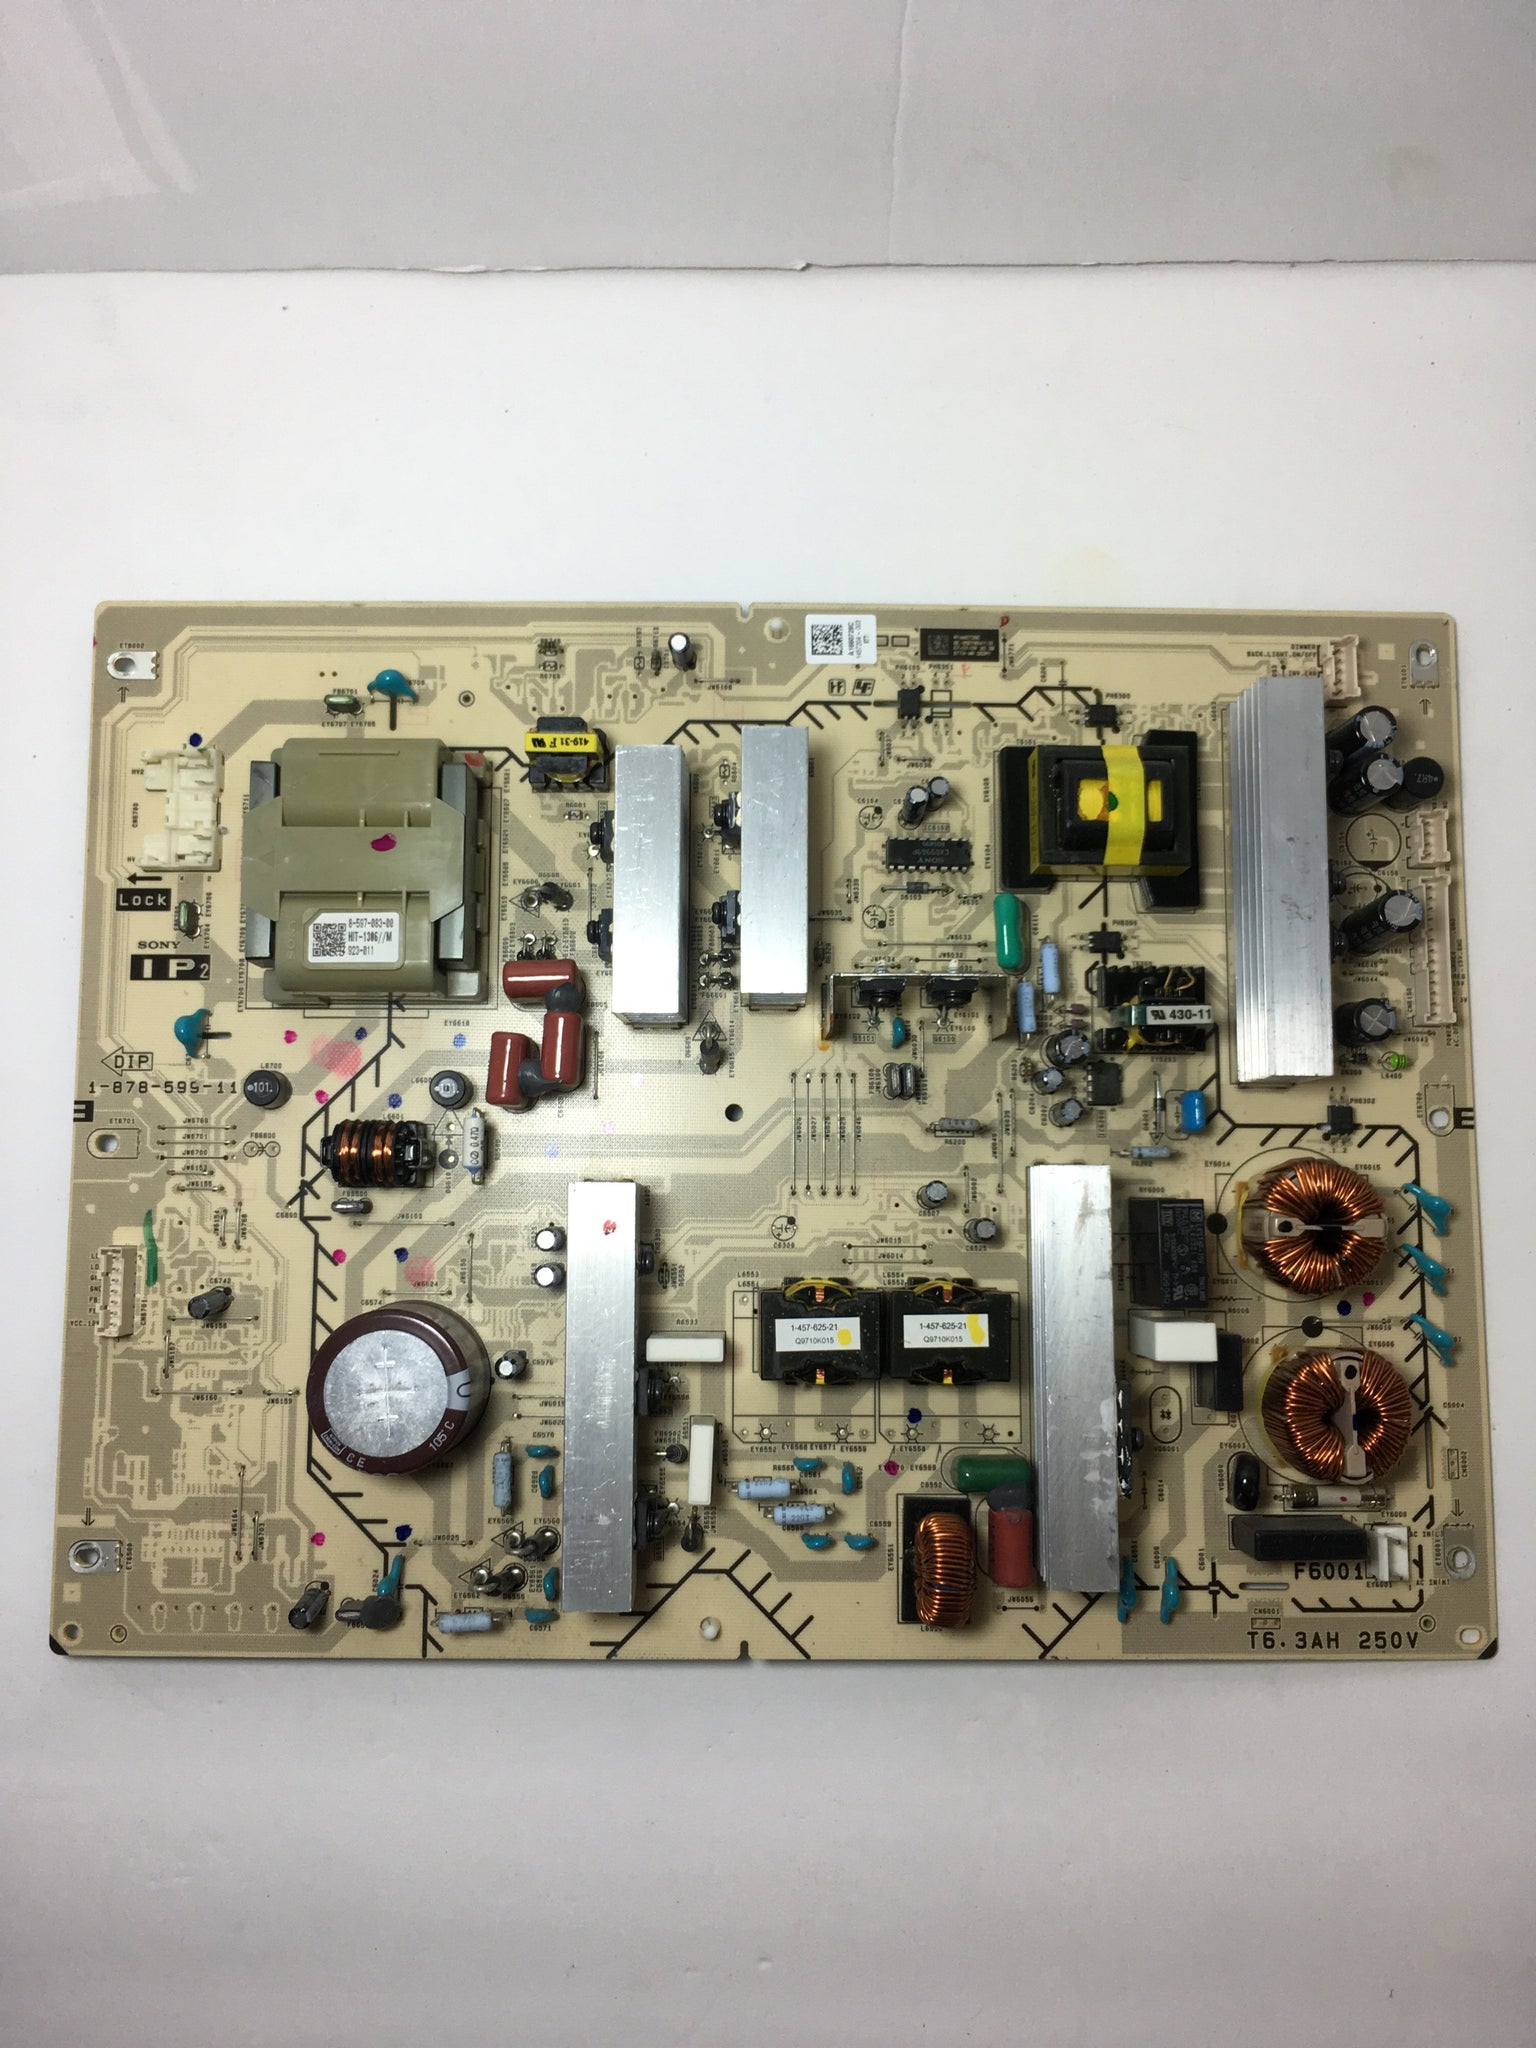 Sony A-1660-728-C (1-878-599-11) IP2 Board